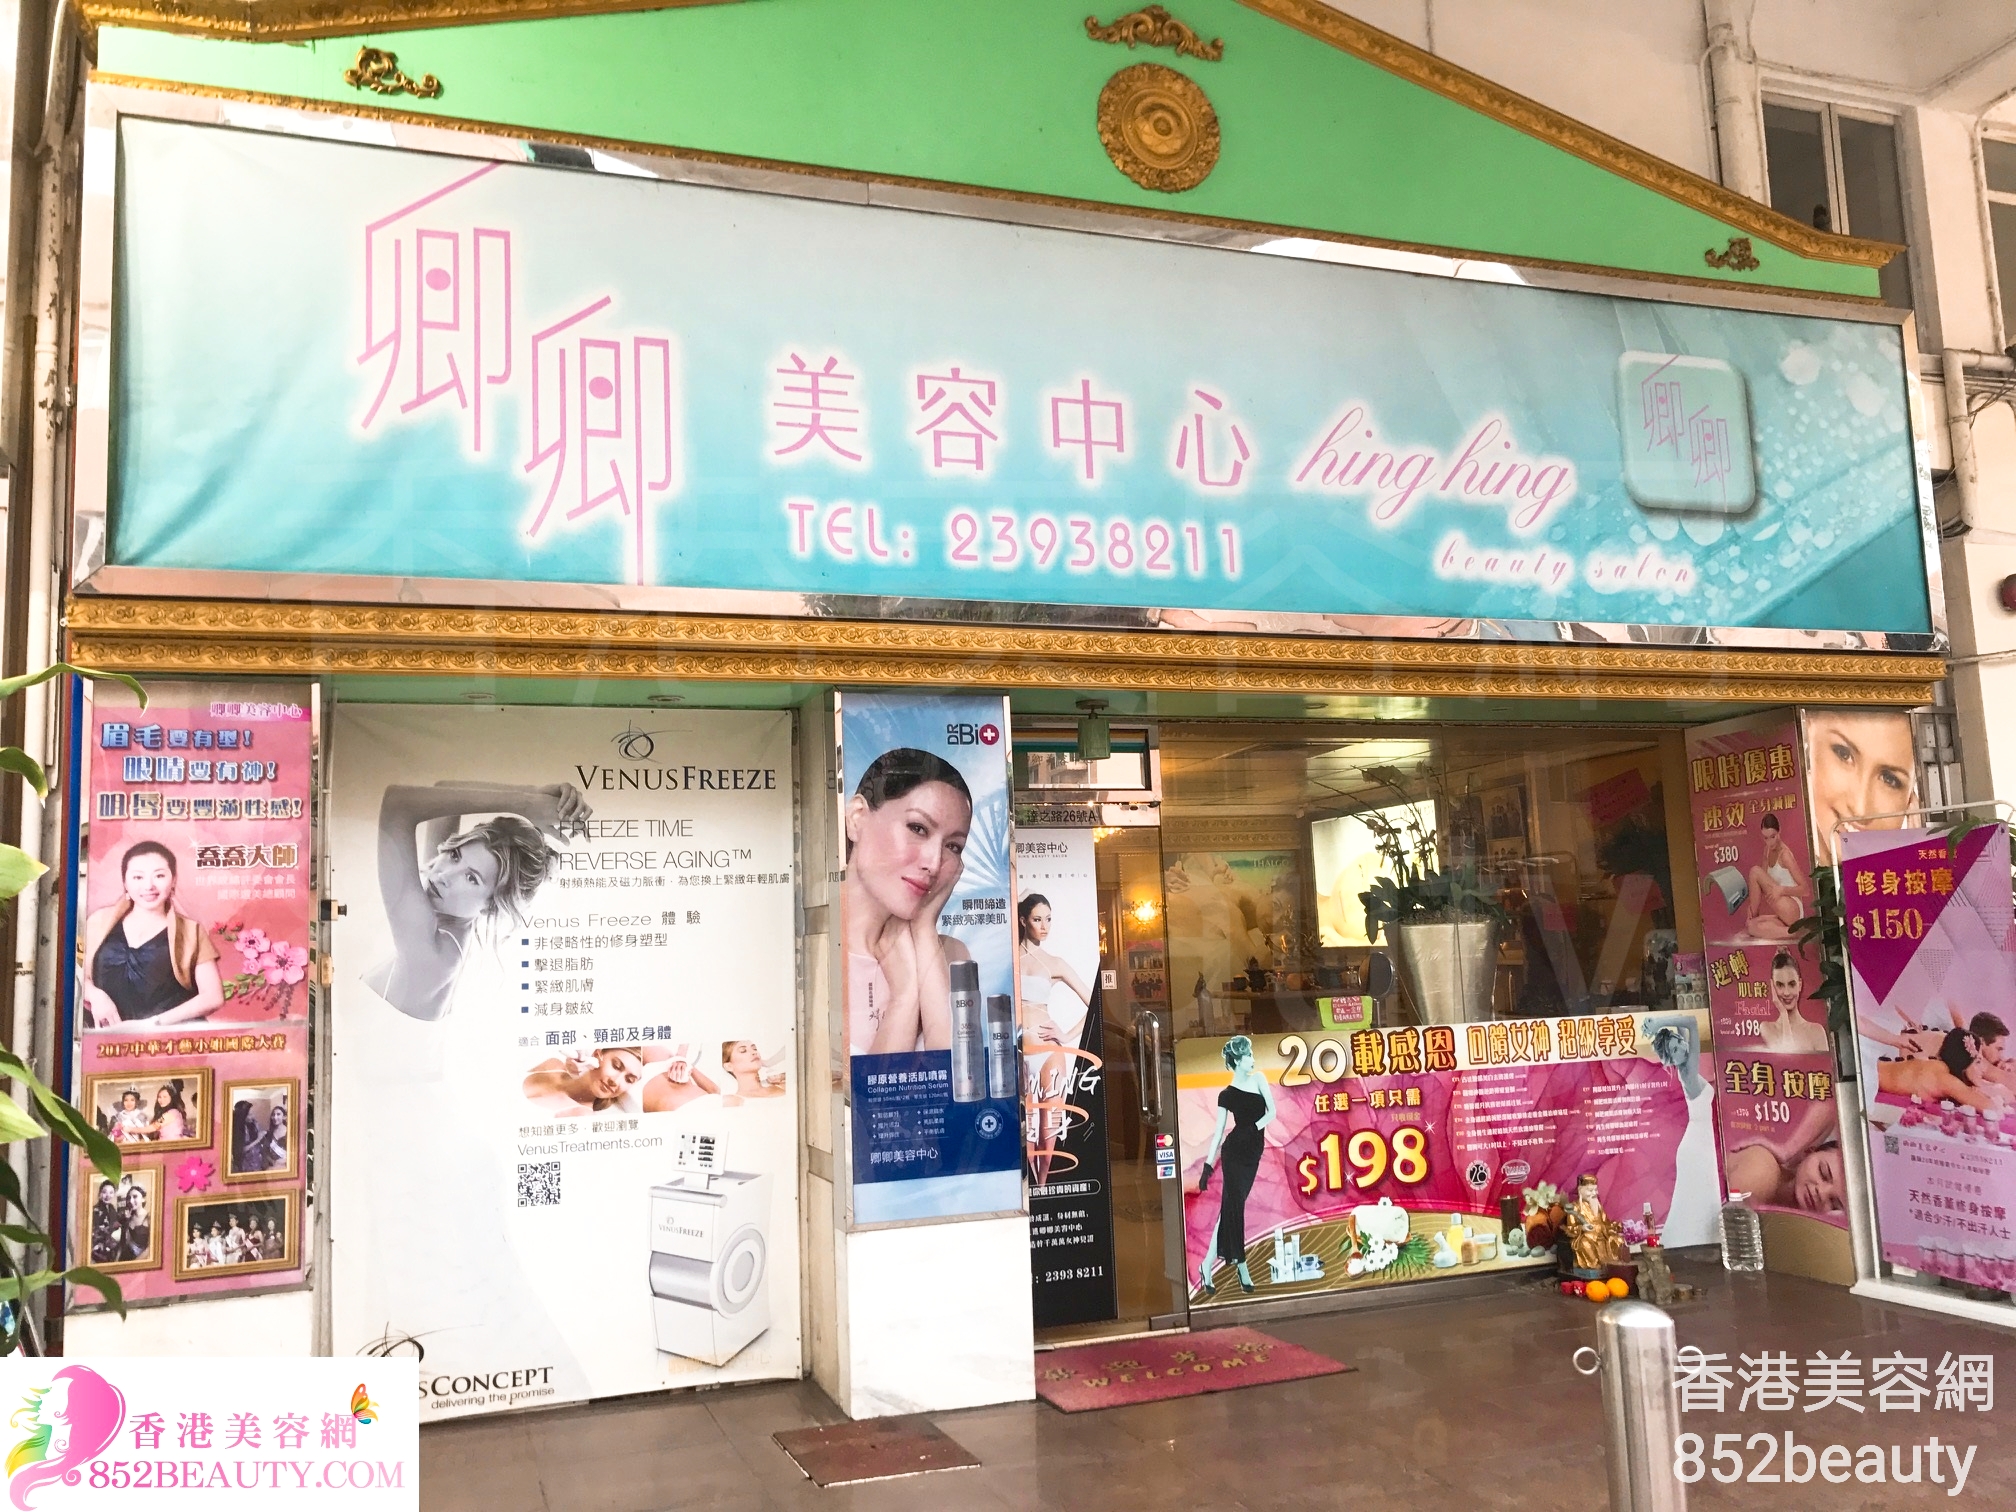 香港美容網 Hong Kong Beauty Salon 美容院 / 美容師: 卿卿美容中心